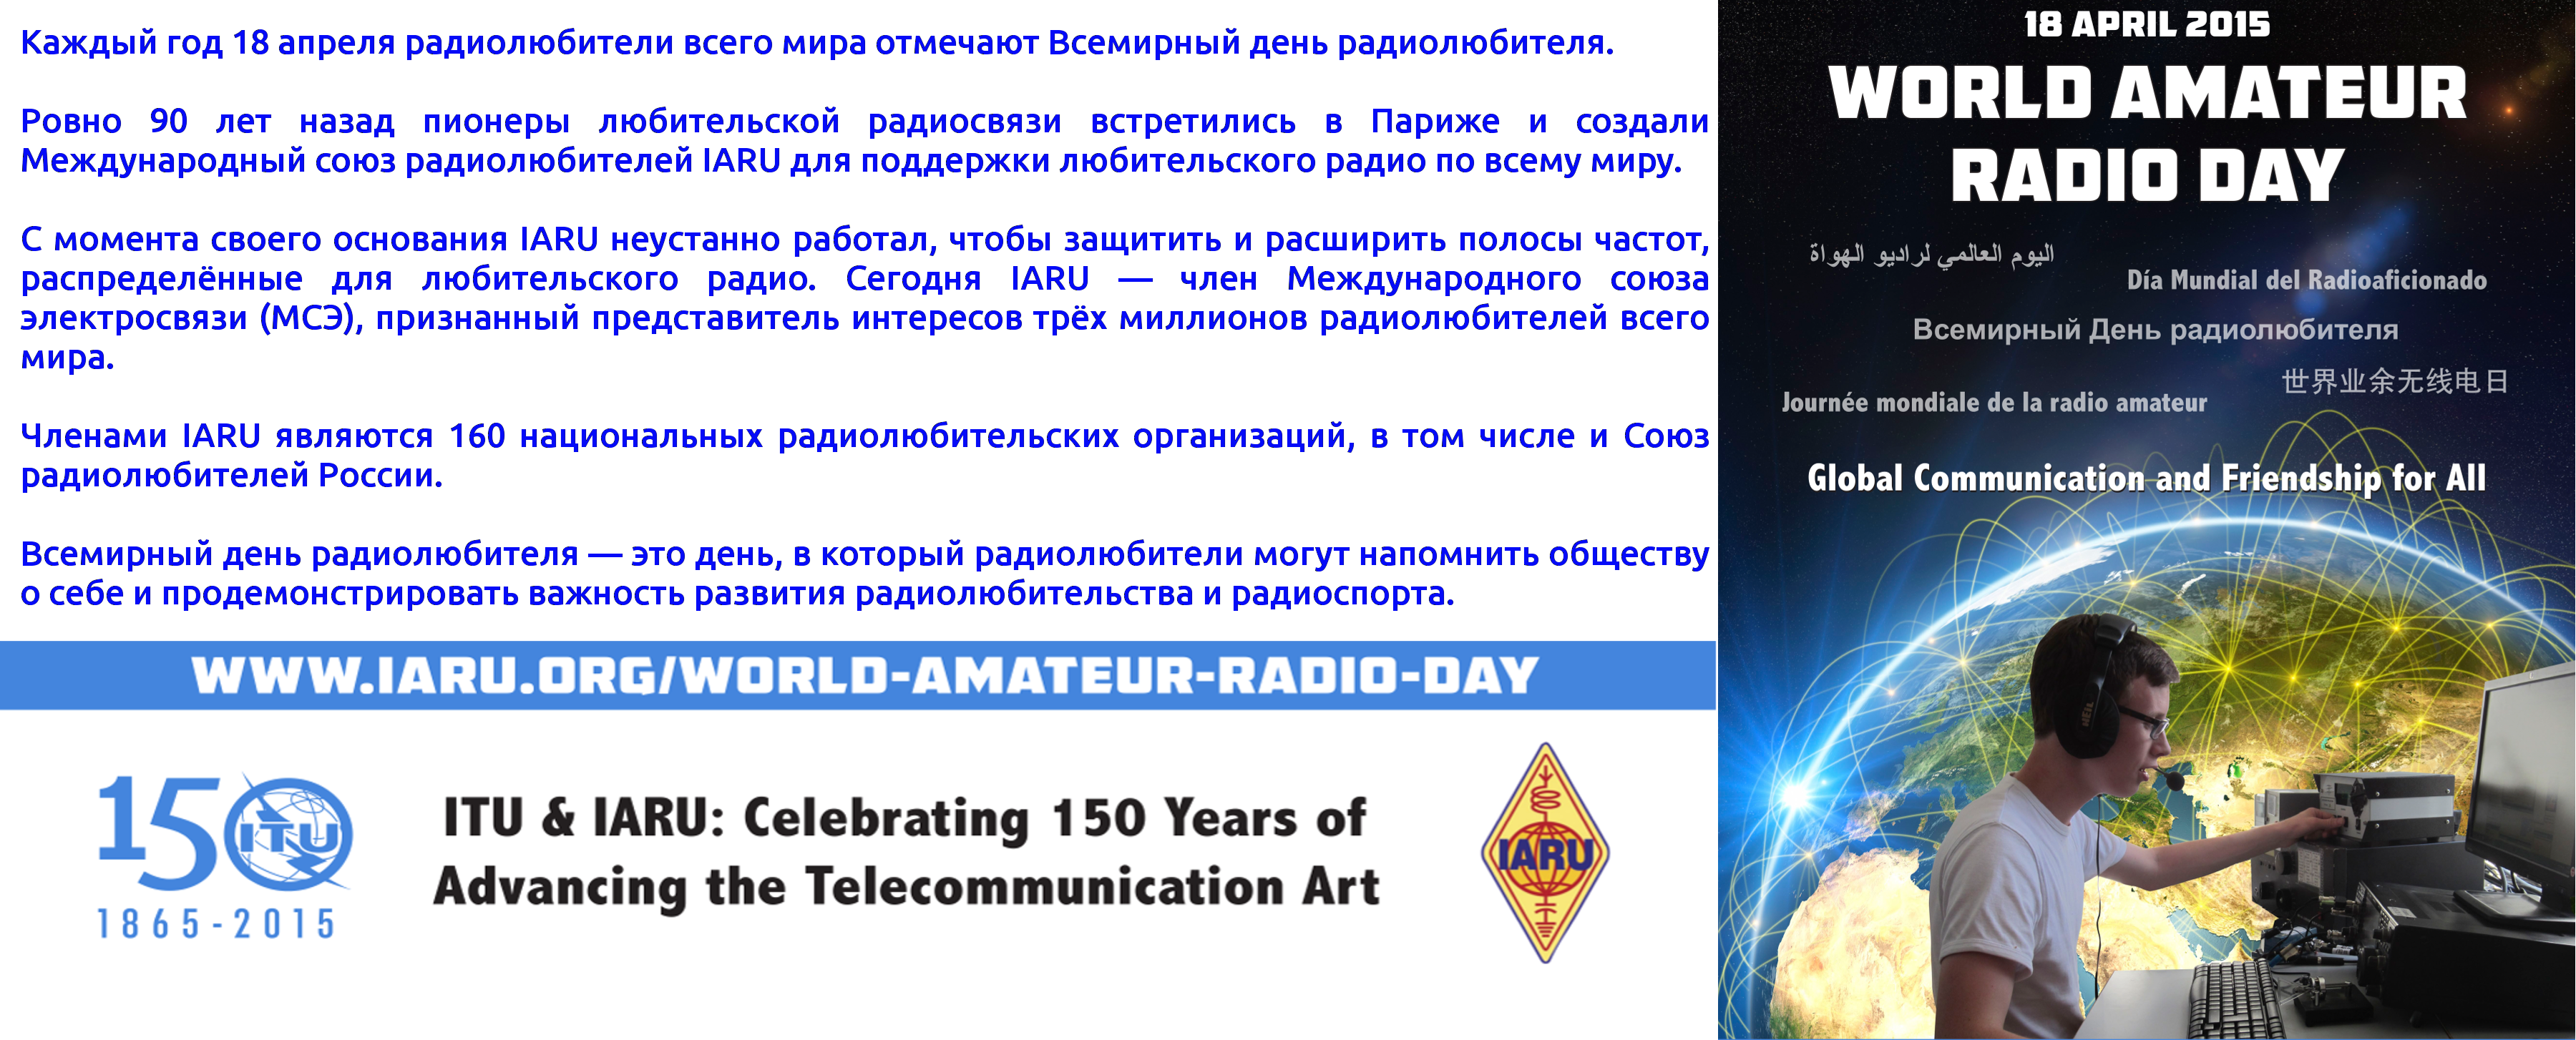 День радиолюбителя. Международный день радиолюбителей 18 апреля. Всемирный день радиолюбителя поздравления. С днем радиолюбителя поздравления. Всемирный день радиолюбителя открытки.